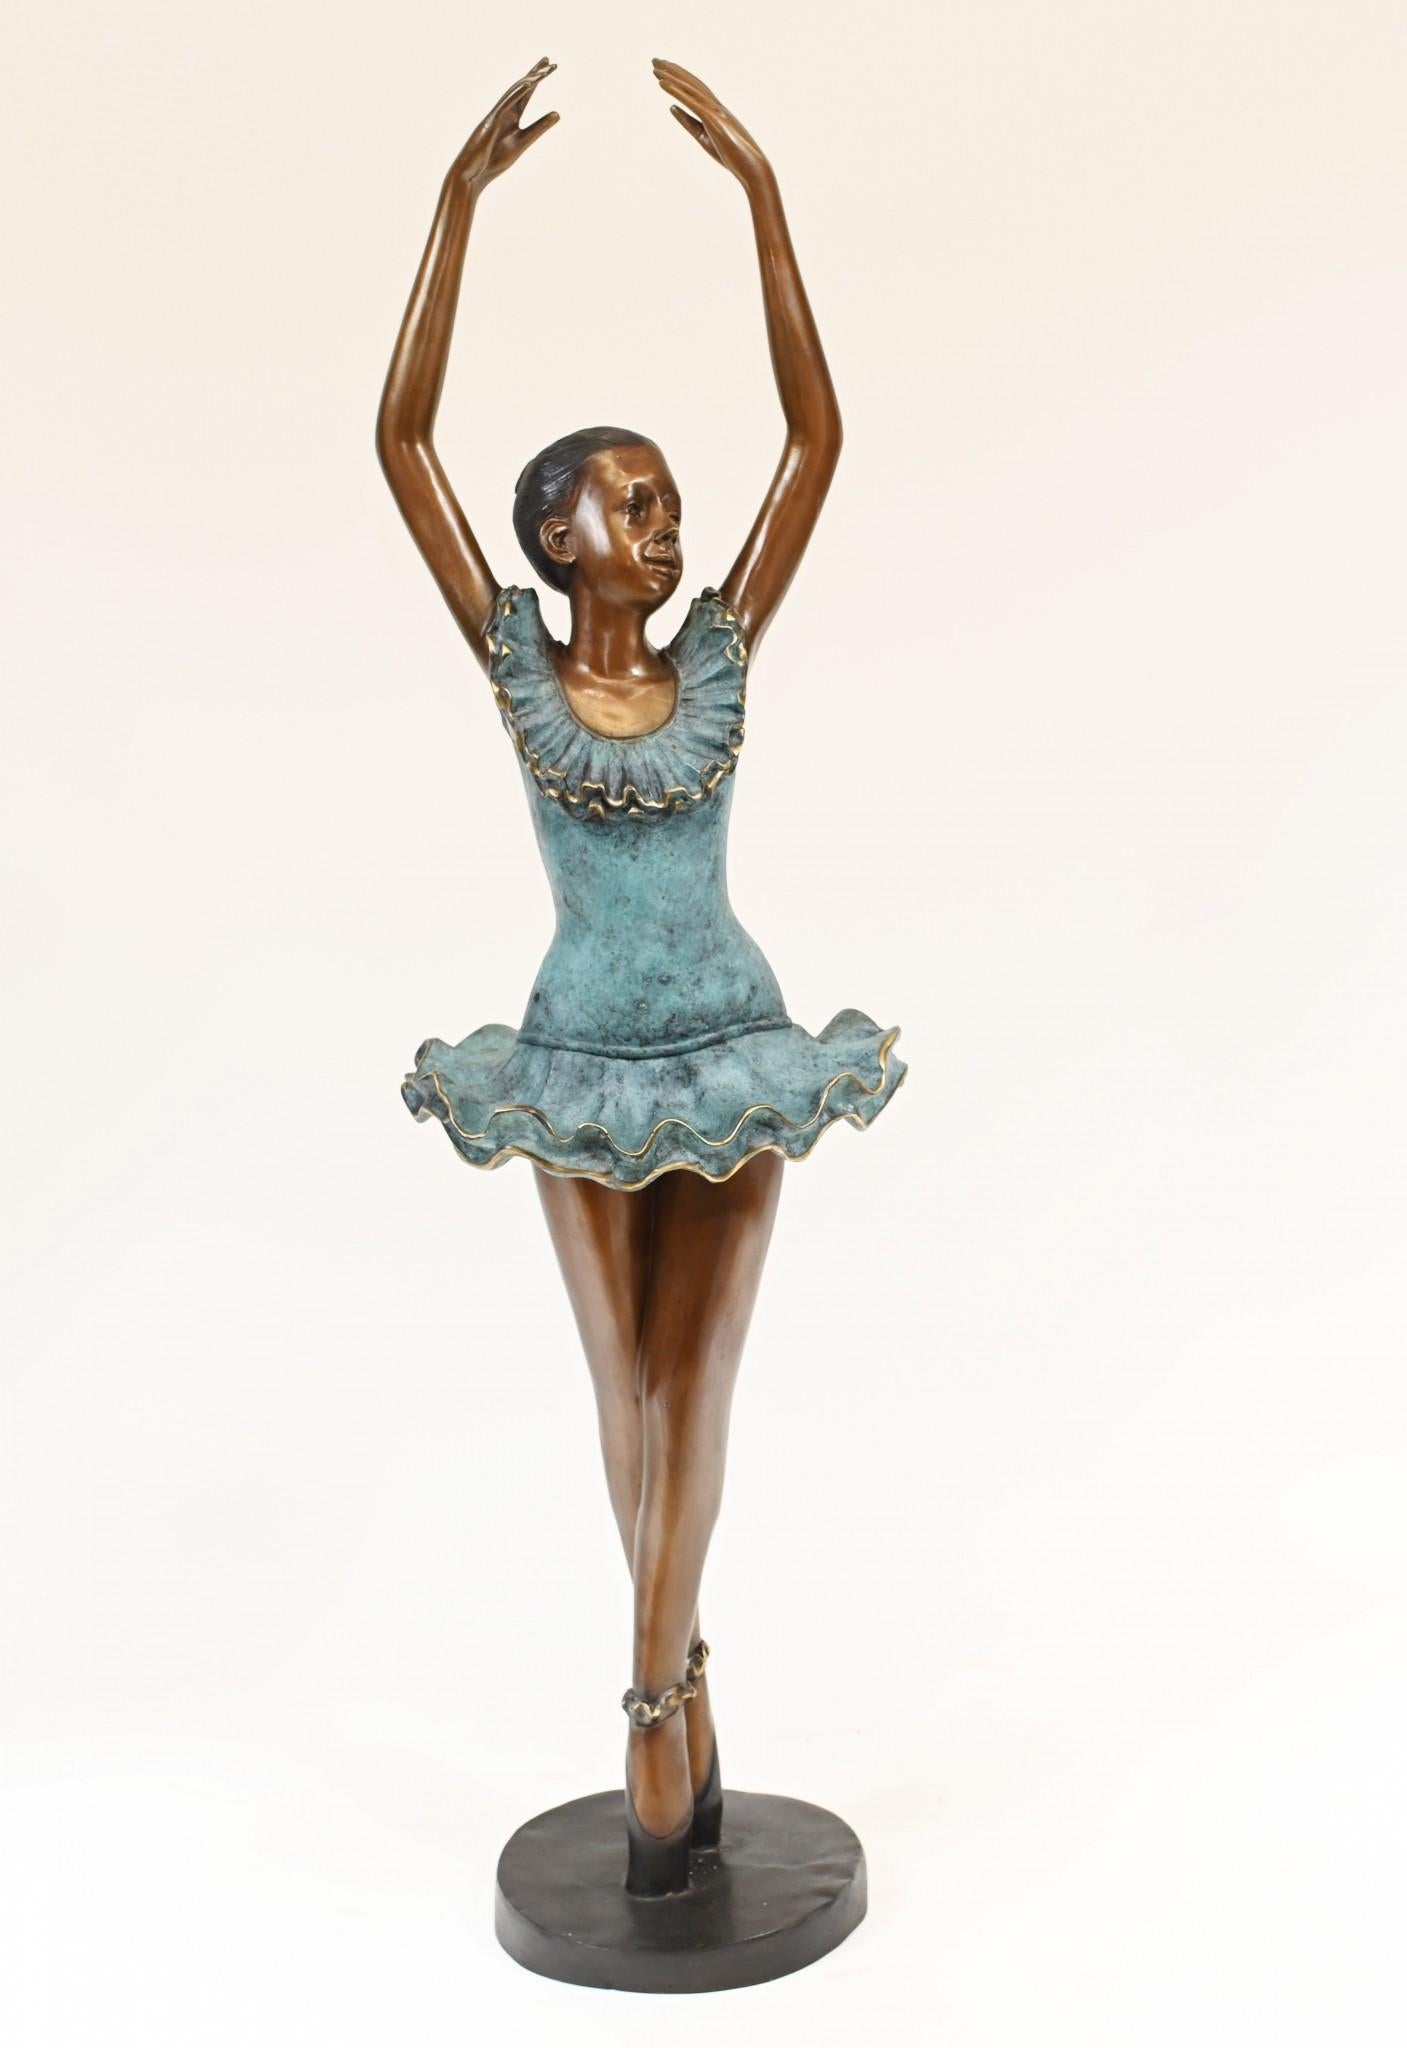 Vintage Ballerina Figurine - 7 For Sale on 1stDibs | ballerina figures